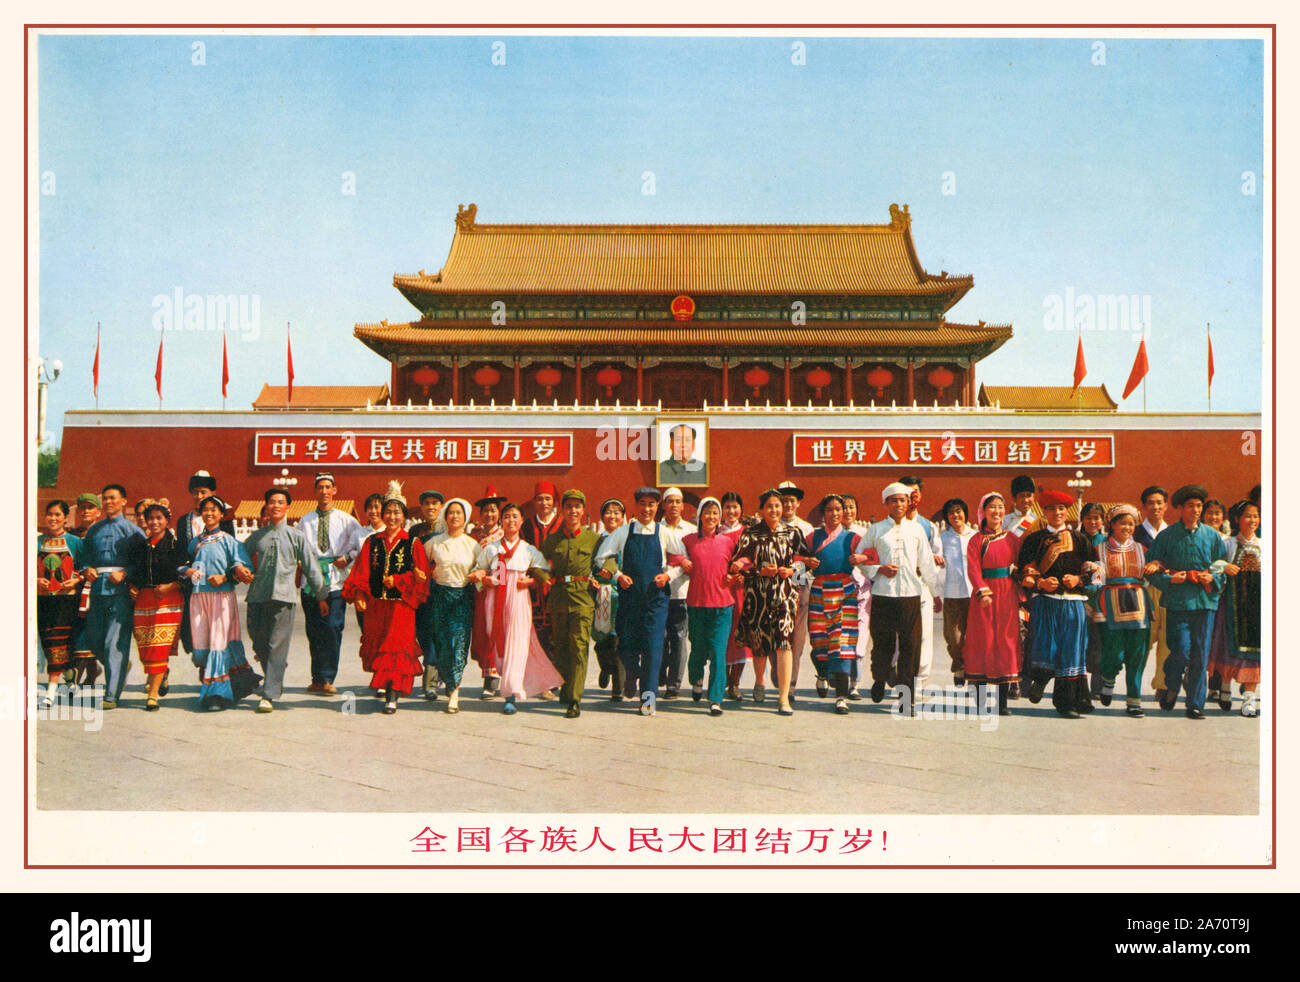 Vintage 1950 Le président Mao Affiche de propagande chinoise : "L'Unité de toutes les ethnies sur la Nation dix mille ans" Le Président Mao Portrait derrière les gens dans l'affiche ci-dessus sont debout en face de la Place Tian'an Men, qui est un symbole national de la Chine. L'affiche est l'acronyme de l'unité des 56 ethnies de l'ensemble de la nation chinoise. Banque D'Images